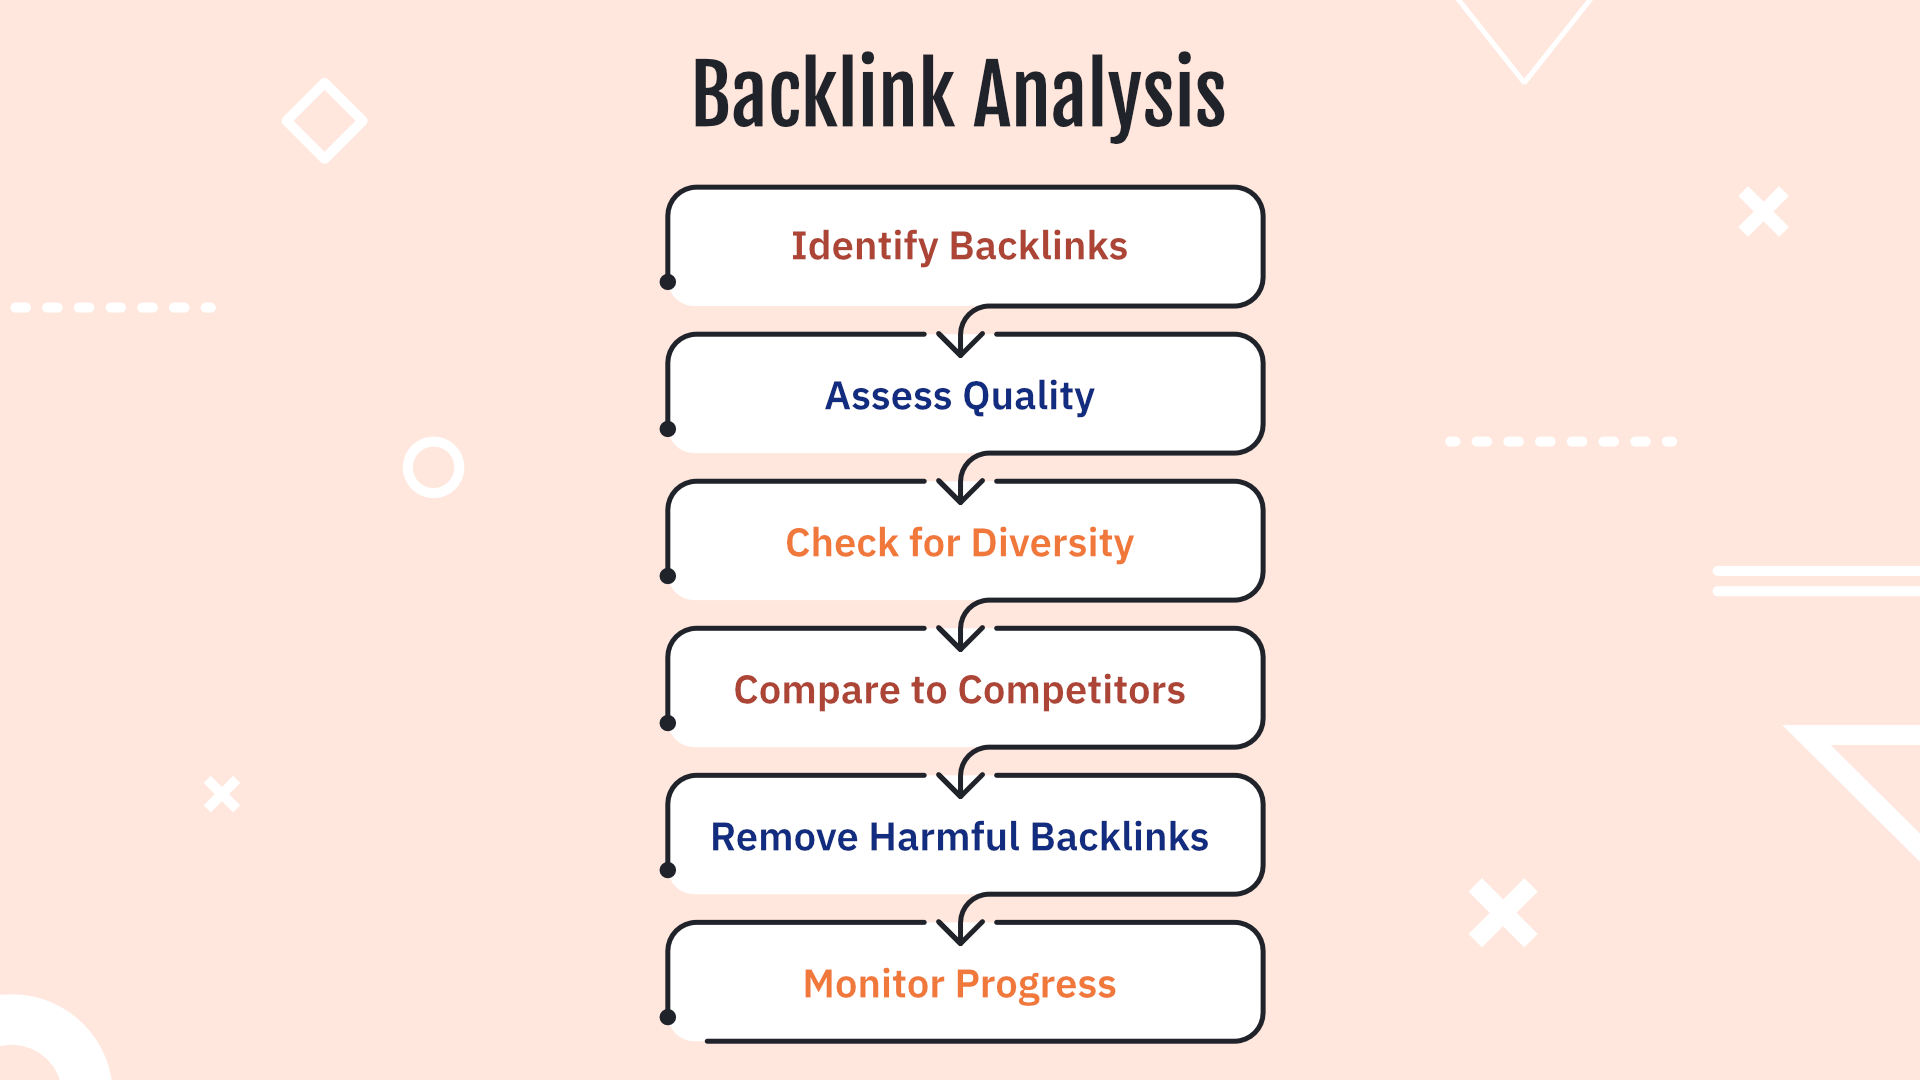 バックリンクの品質評価プロセスの手順